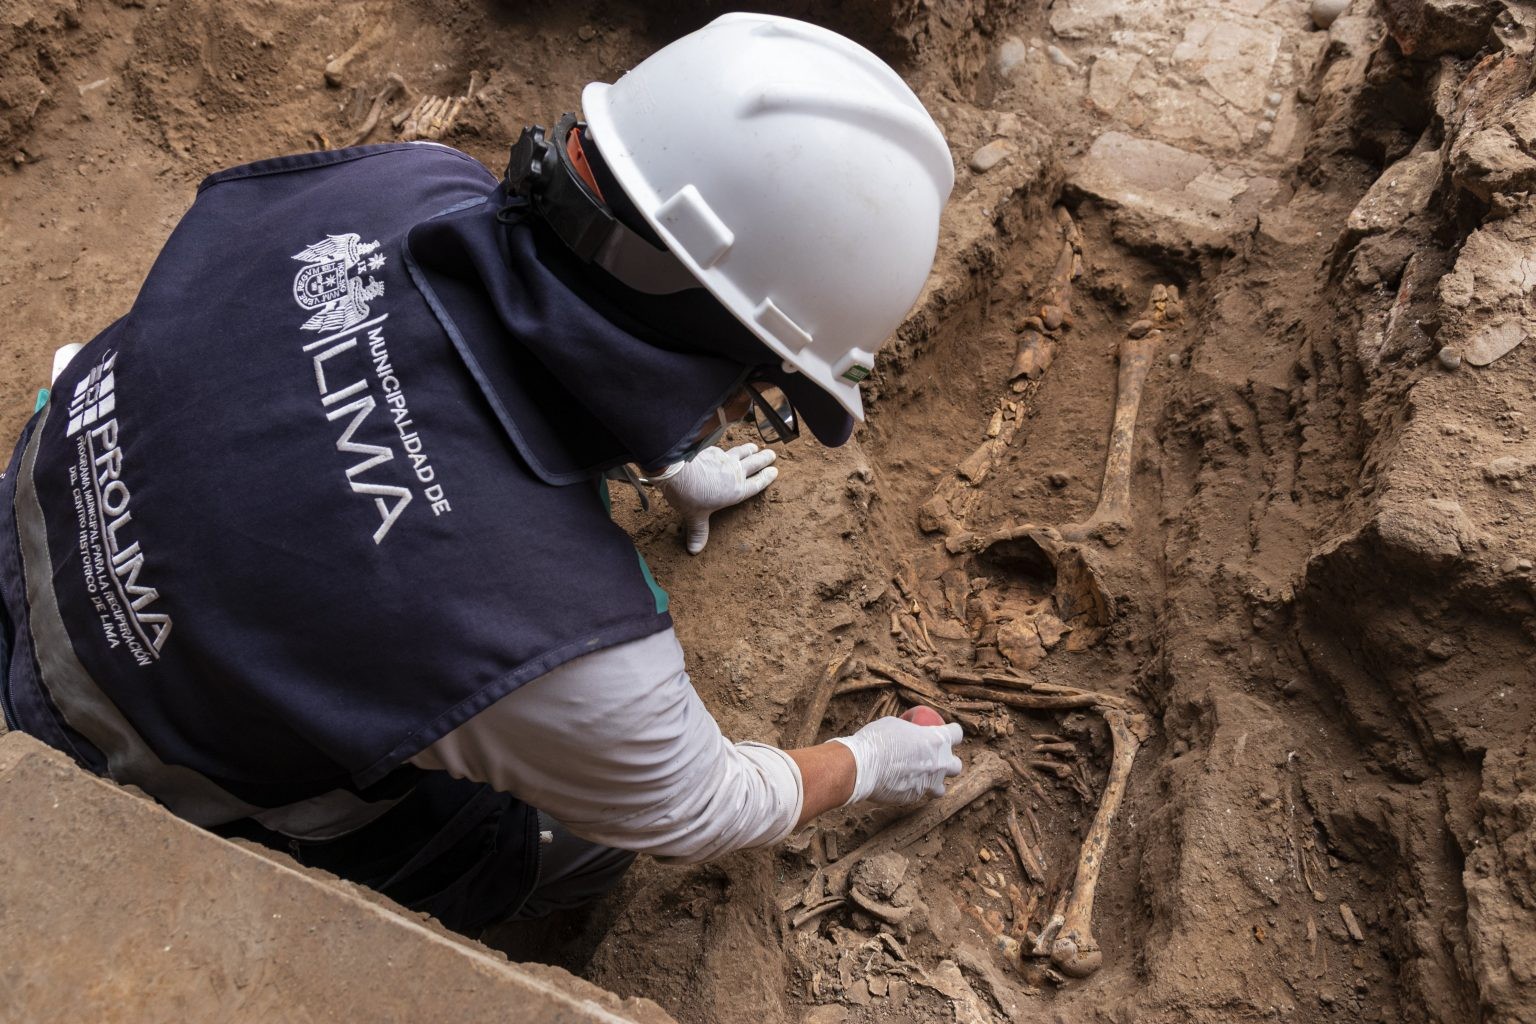 Restos mortais descobertos em hospital de quase 500 anos em Lima, no Peru  (Foto: Município de Lima)